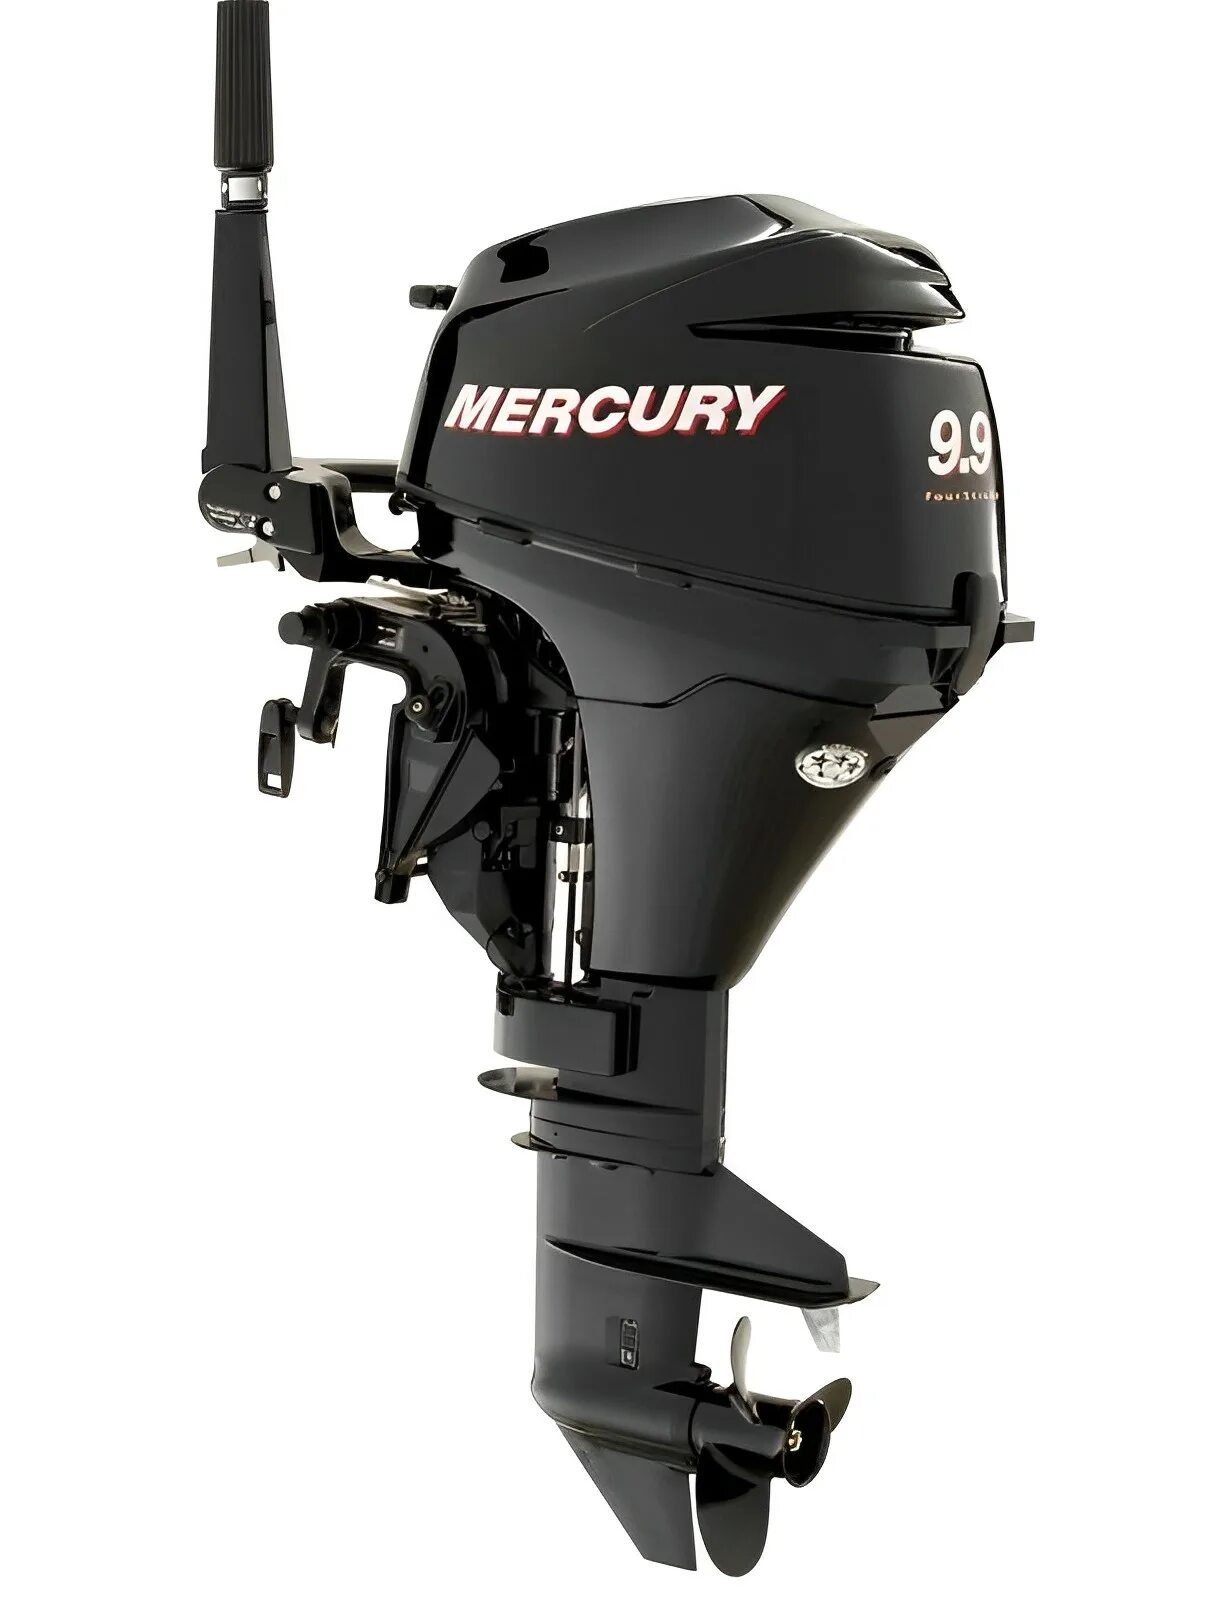 Лодочный мотор меркурий 9.9 купить. Мотор Mercury 9.9. Лодочный мотор Mercury me f 9.9 m. Лодочный мотор Mercury me f 8 m. Mercury 9.9 4х тактный.